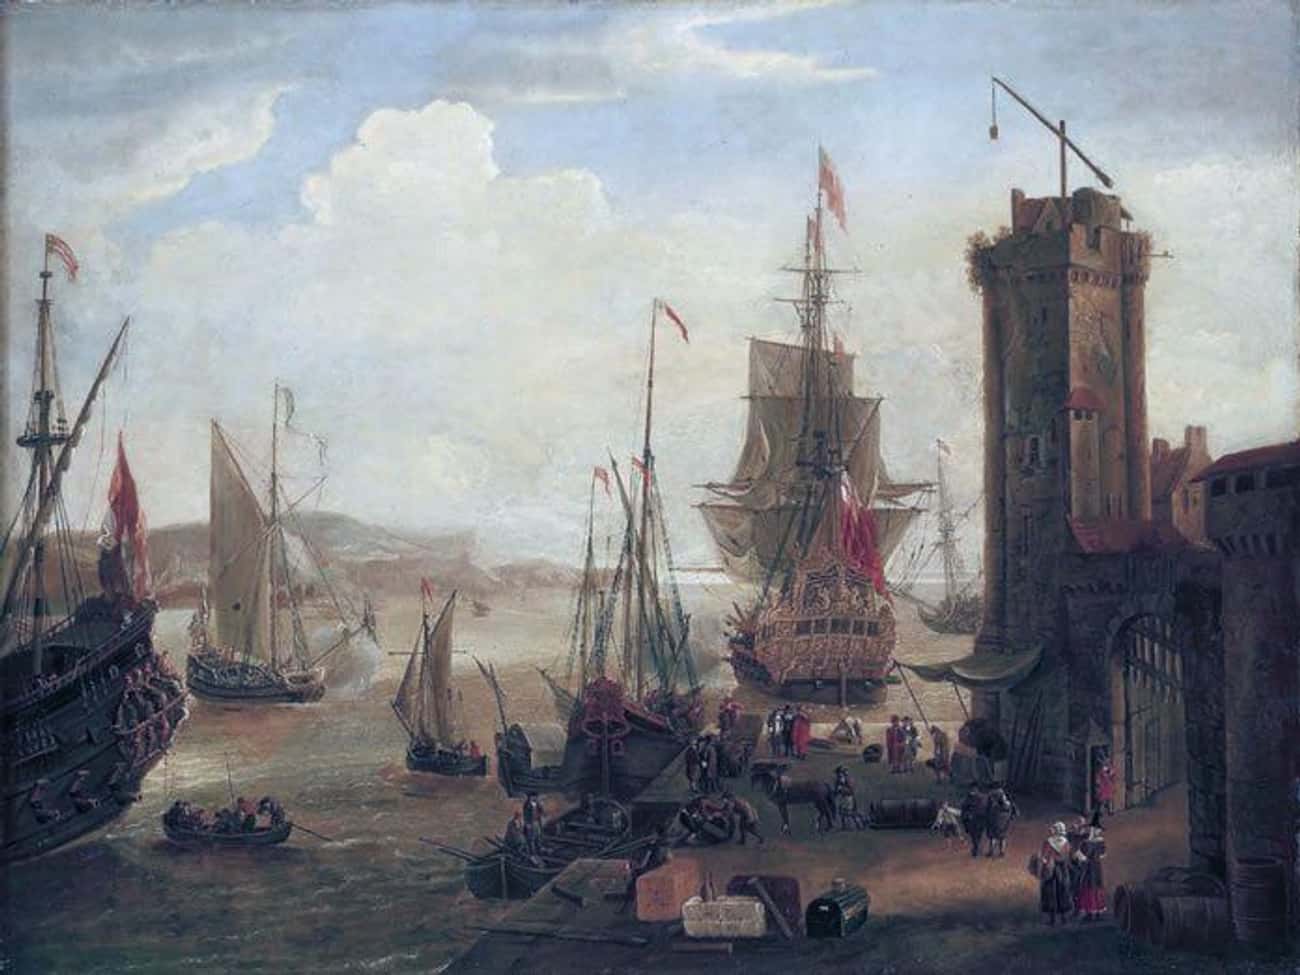 17 century. ОСТ-Индская компания Голландия 17 век. Торговый порт 16 век Англия. 19 Век Любек гавань торговый порт. Торговый порт Англия 17 век.